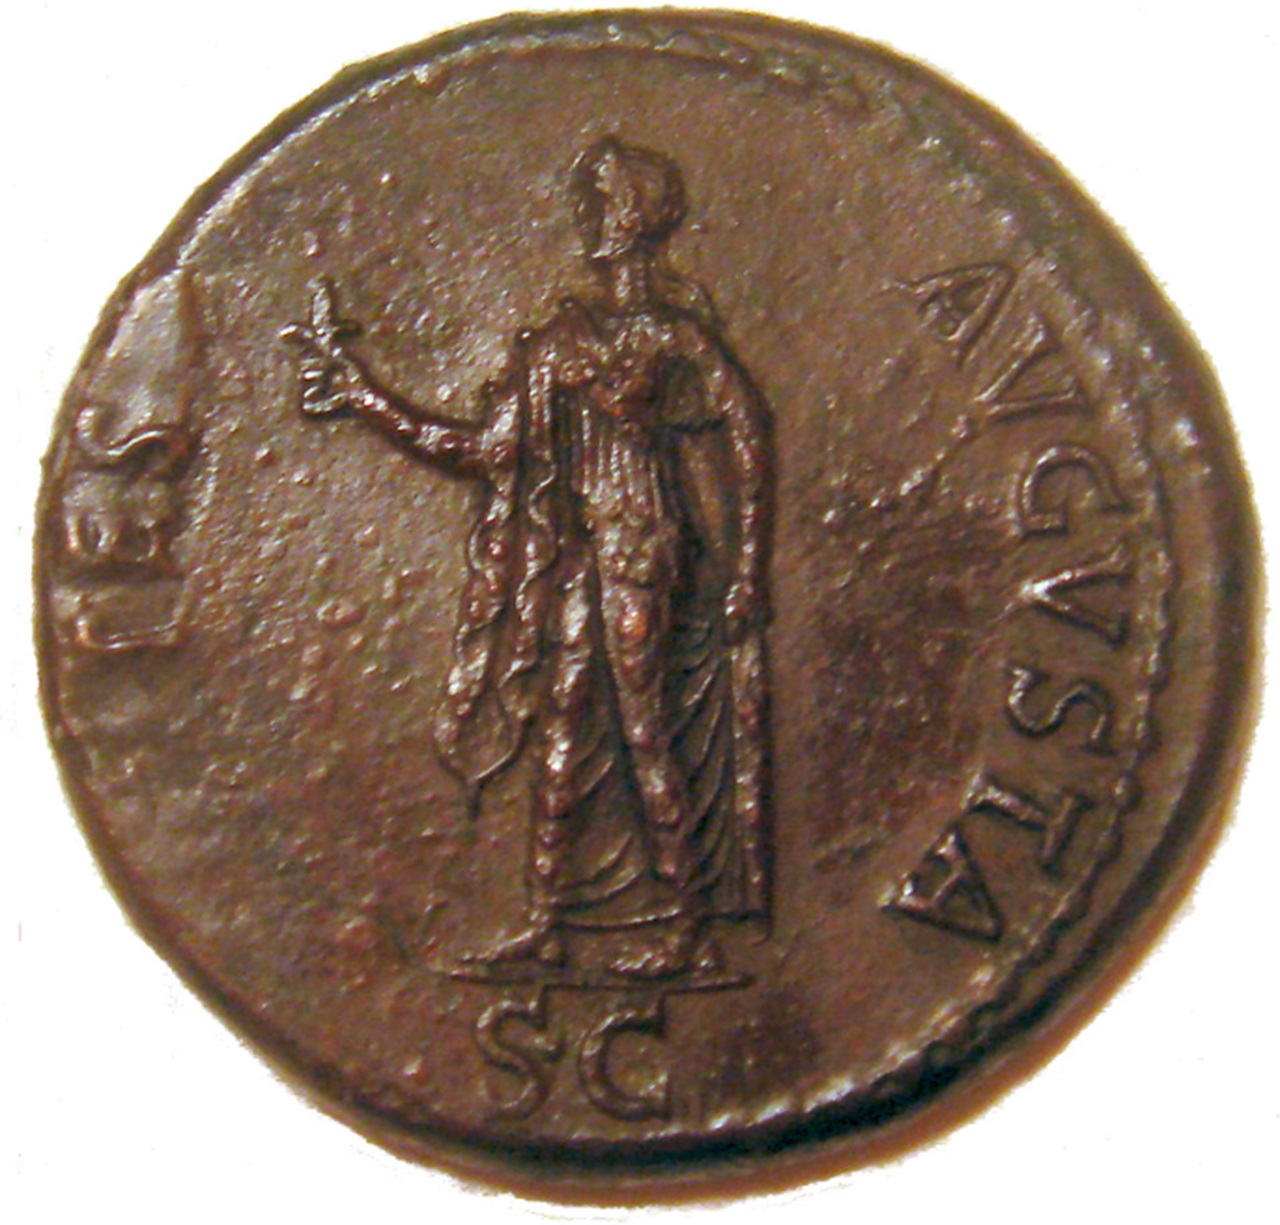 Britannico moneta commemorativa nascita 41 d.C.